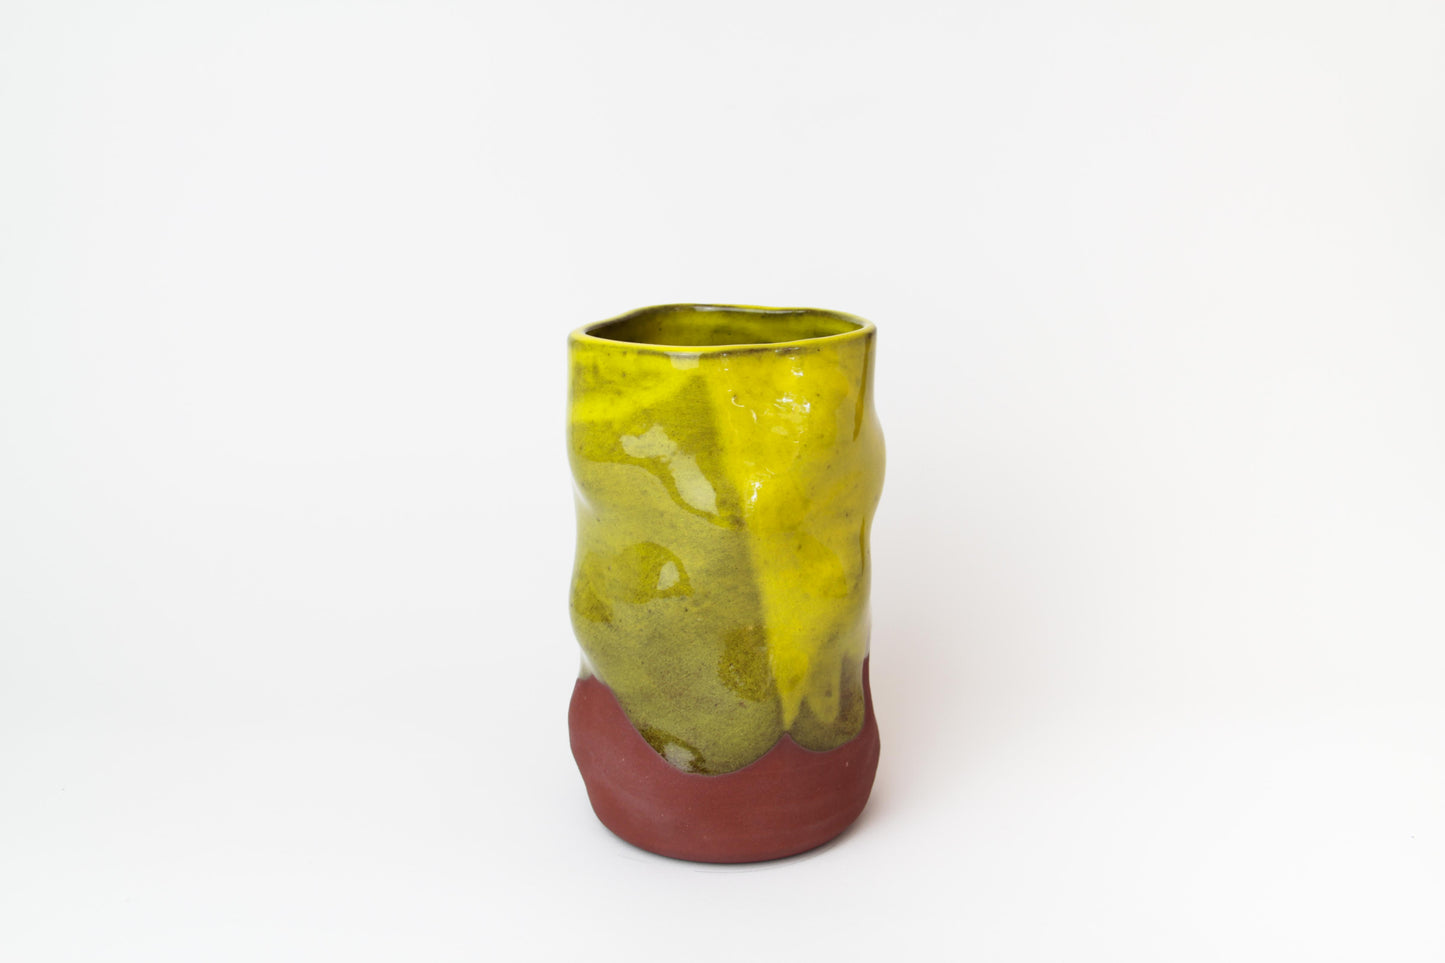 Pineapple Vase #1 Yellow